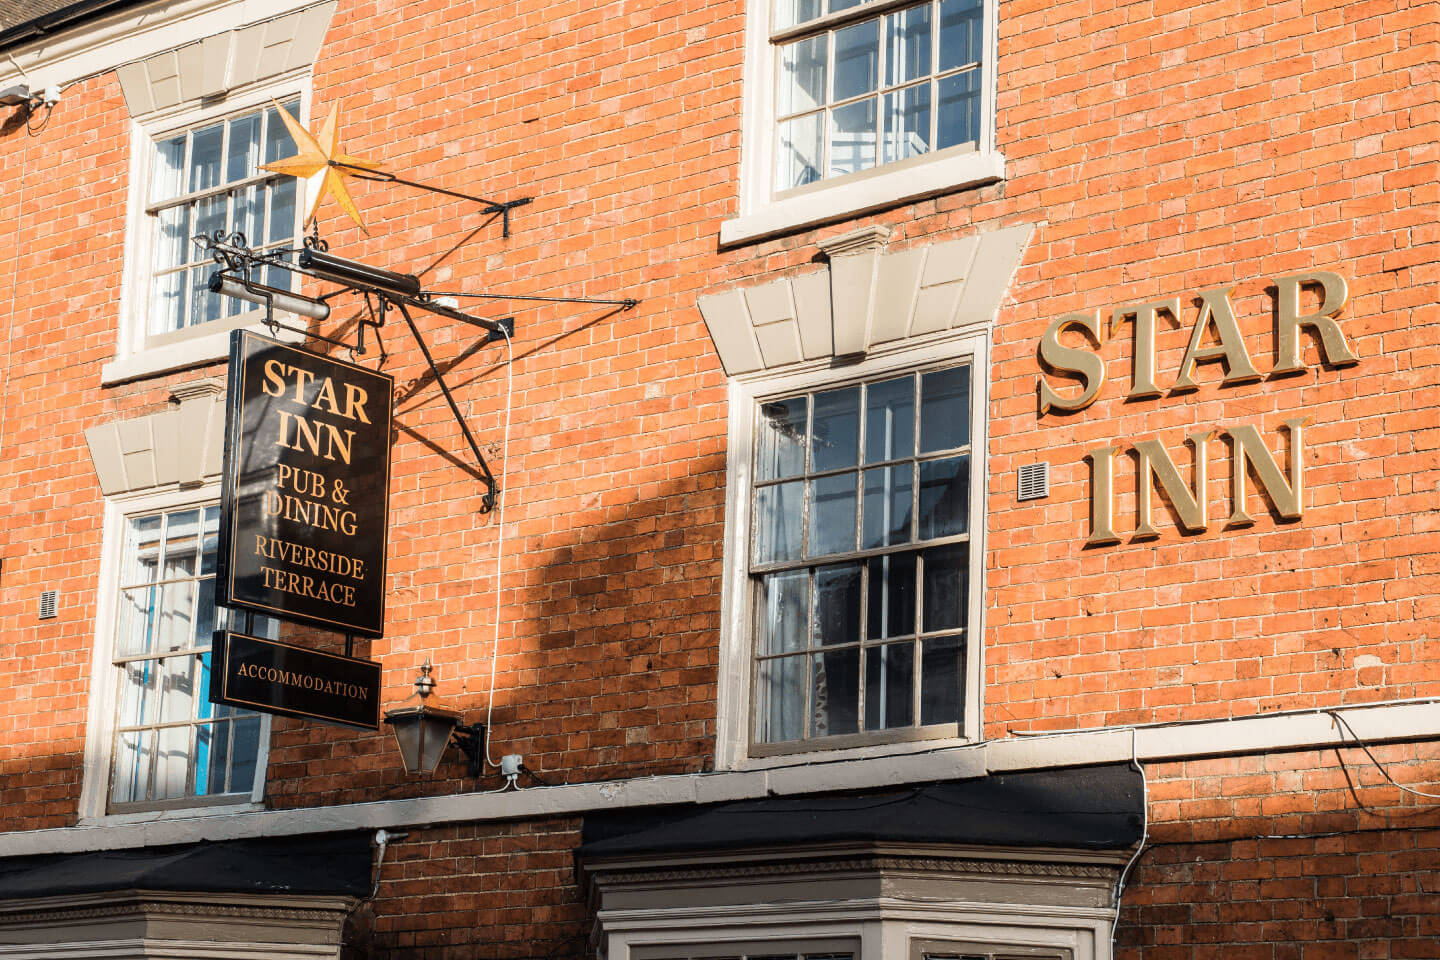 The Star Inn - Image 5 - UK Tourism Online